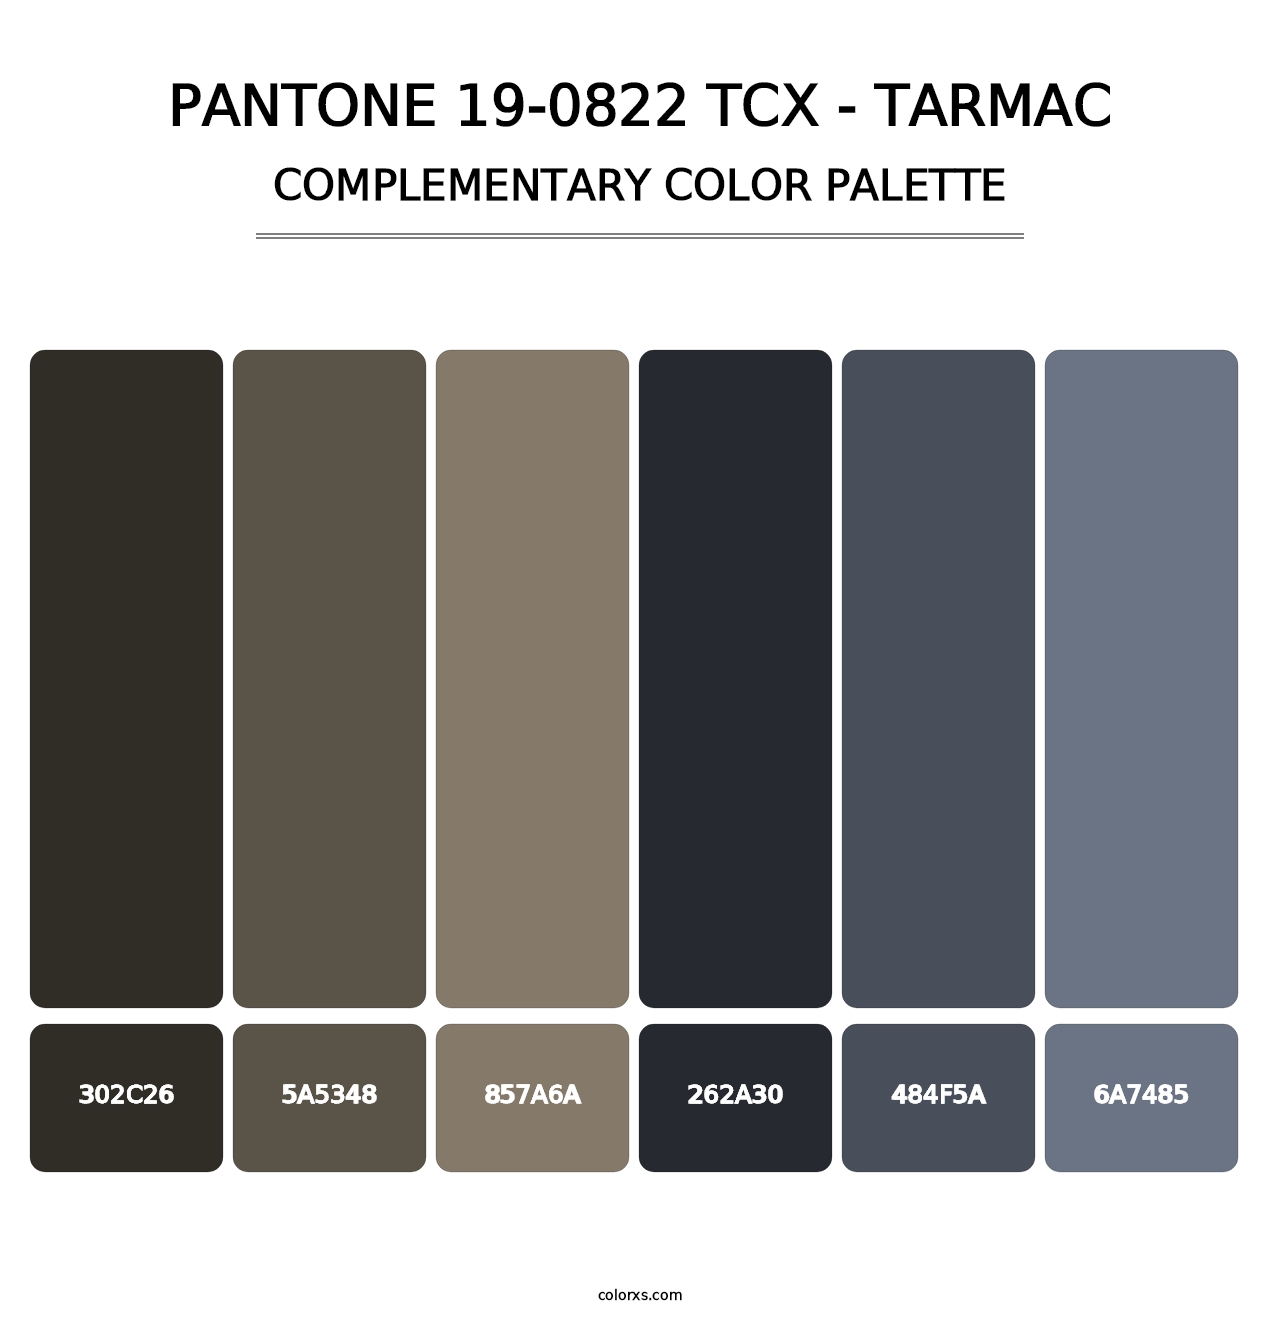 PANTONE 19-0822 TCX - Tarmac - Complementary Color Palette